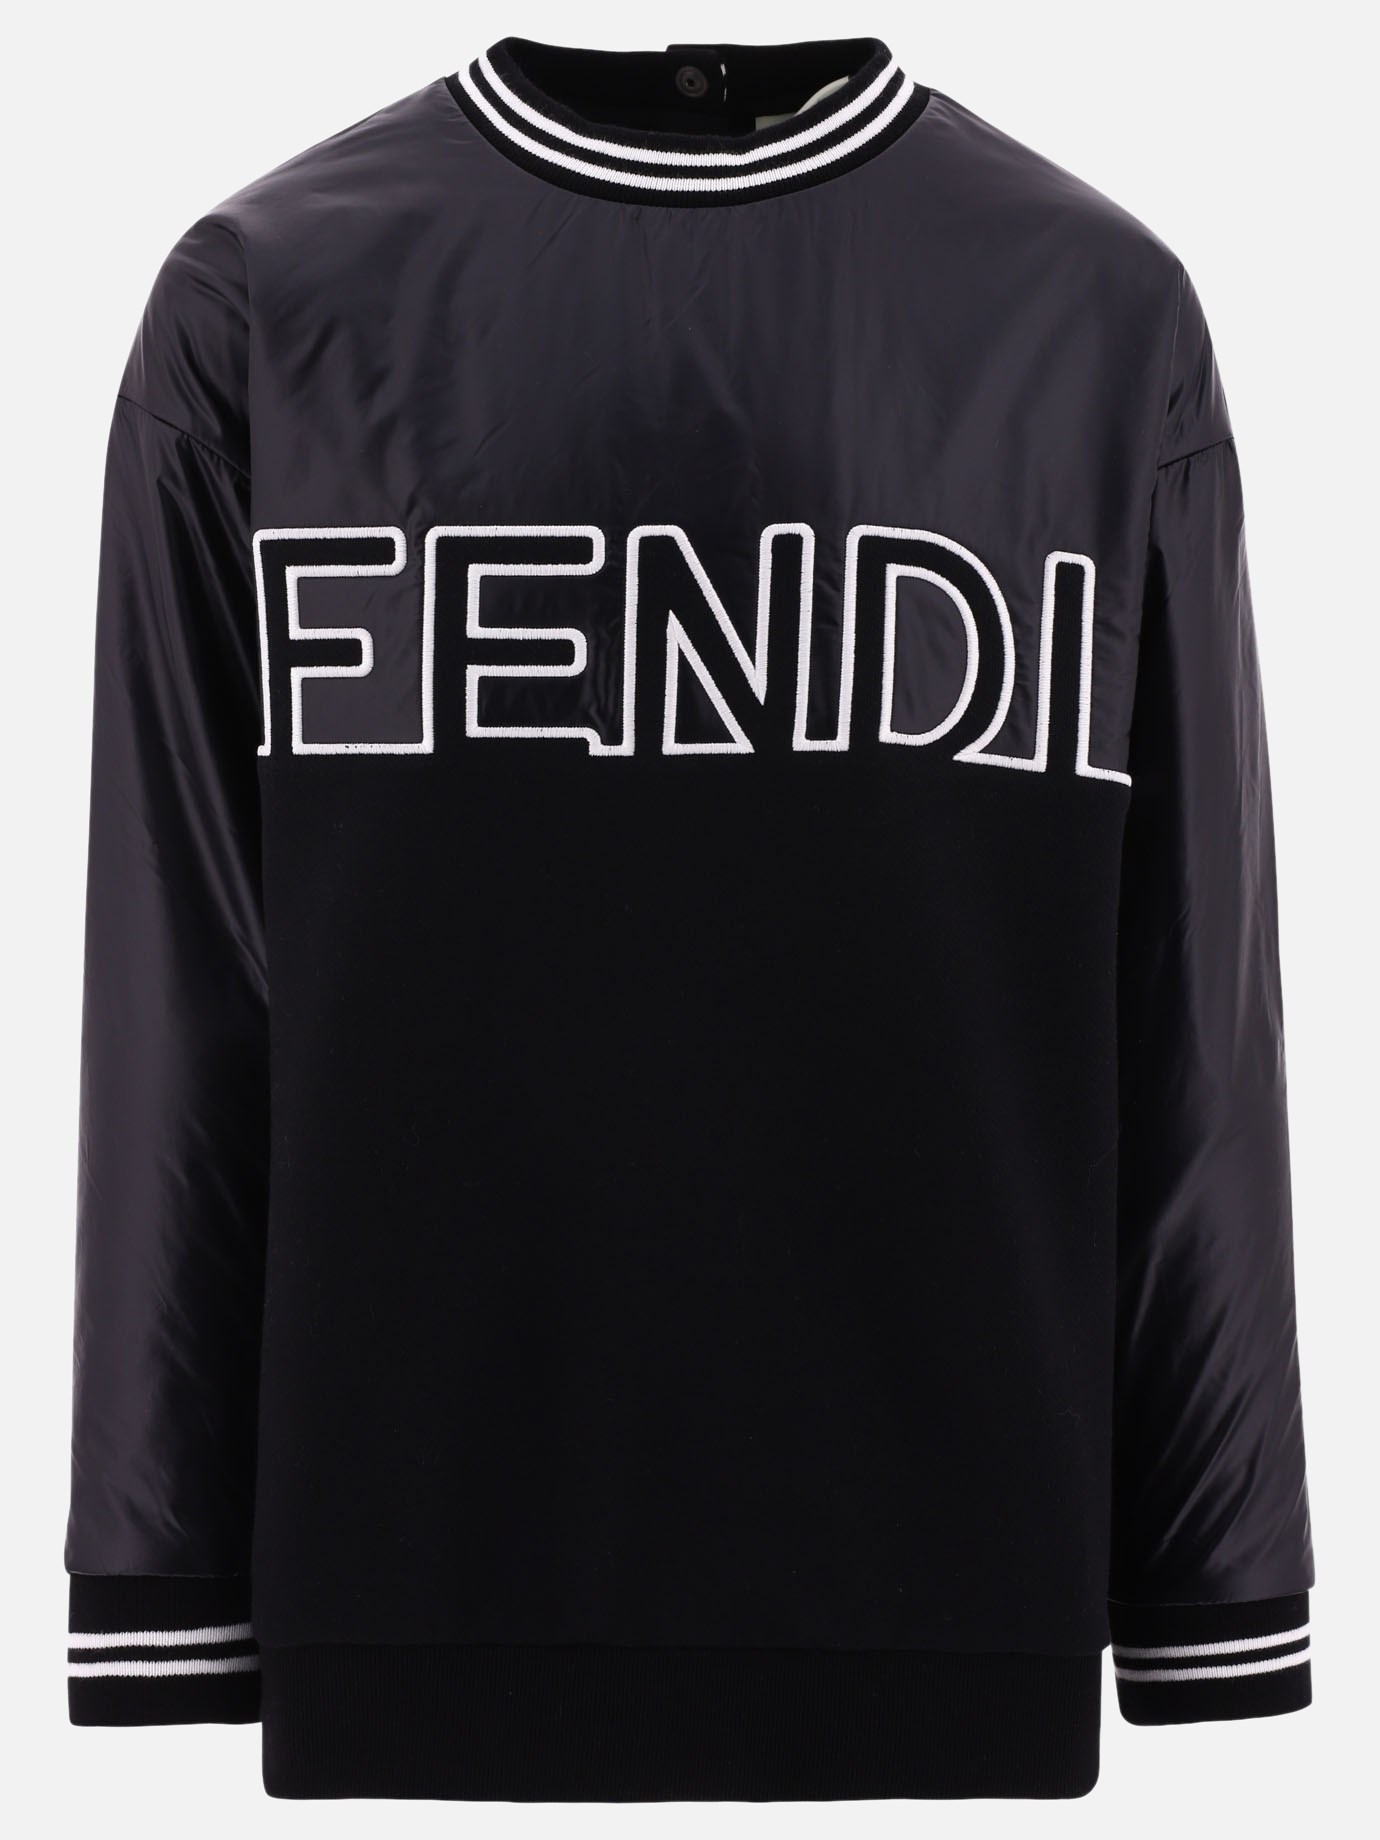 Sweatshirt with embroideryby Fendi Kids - 3